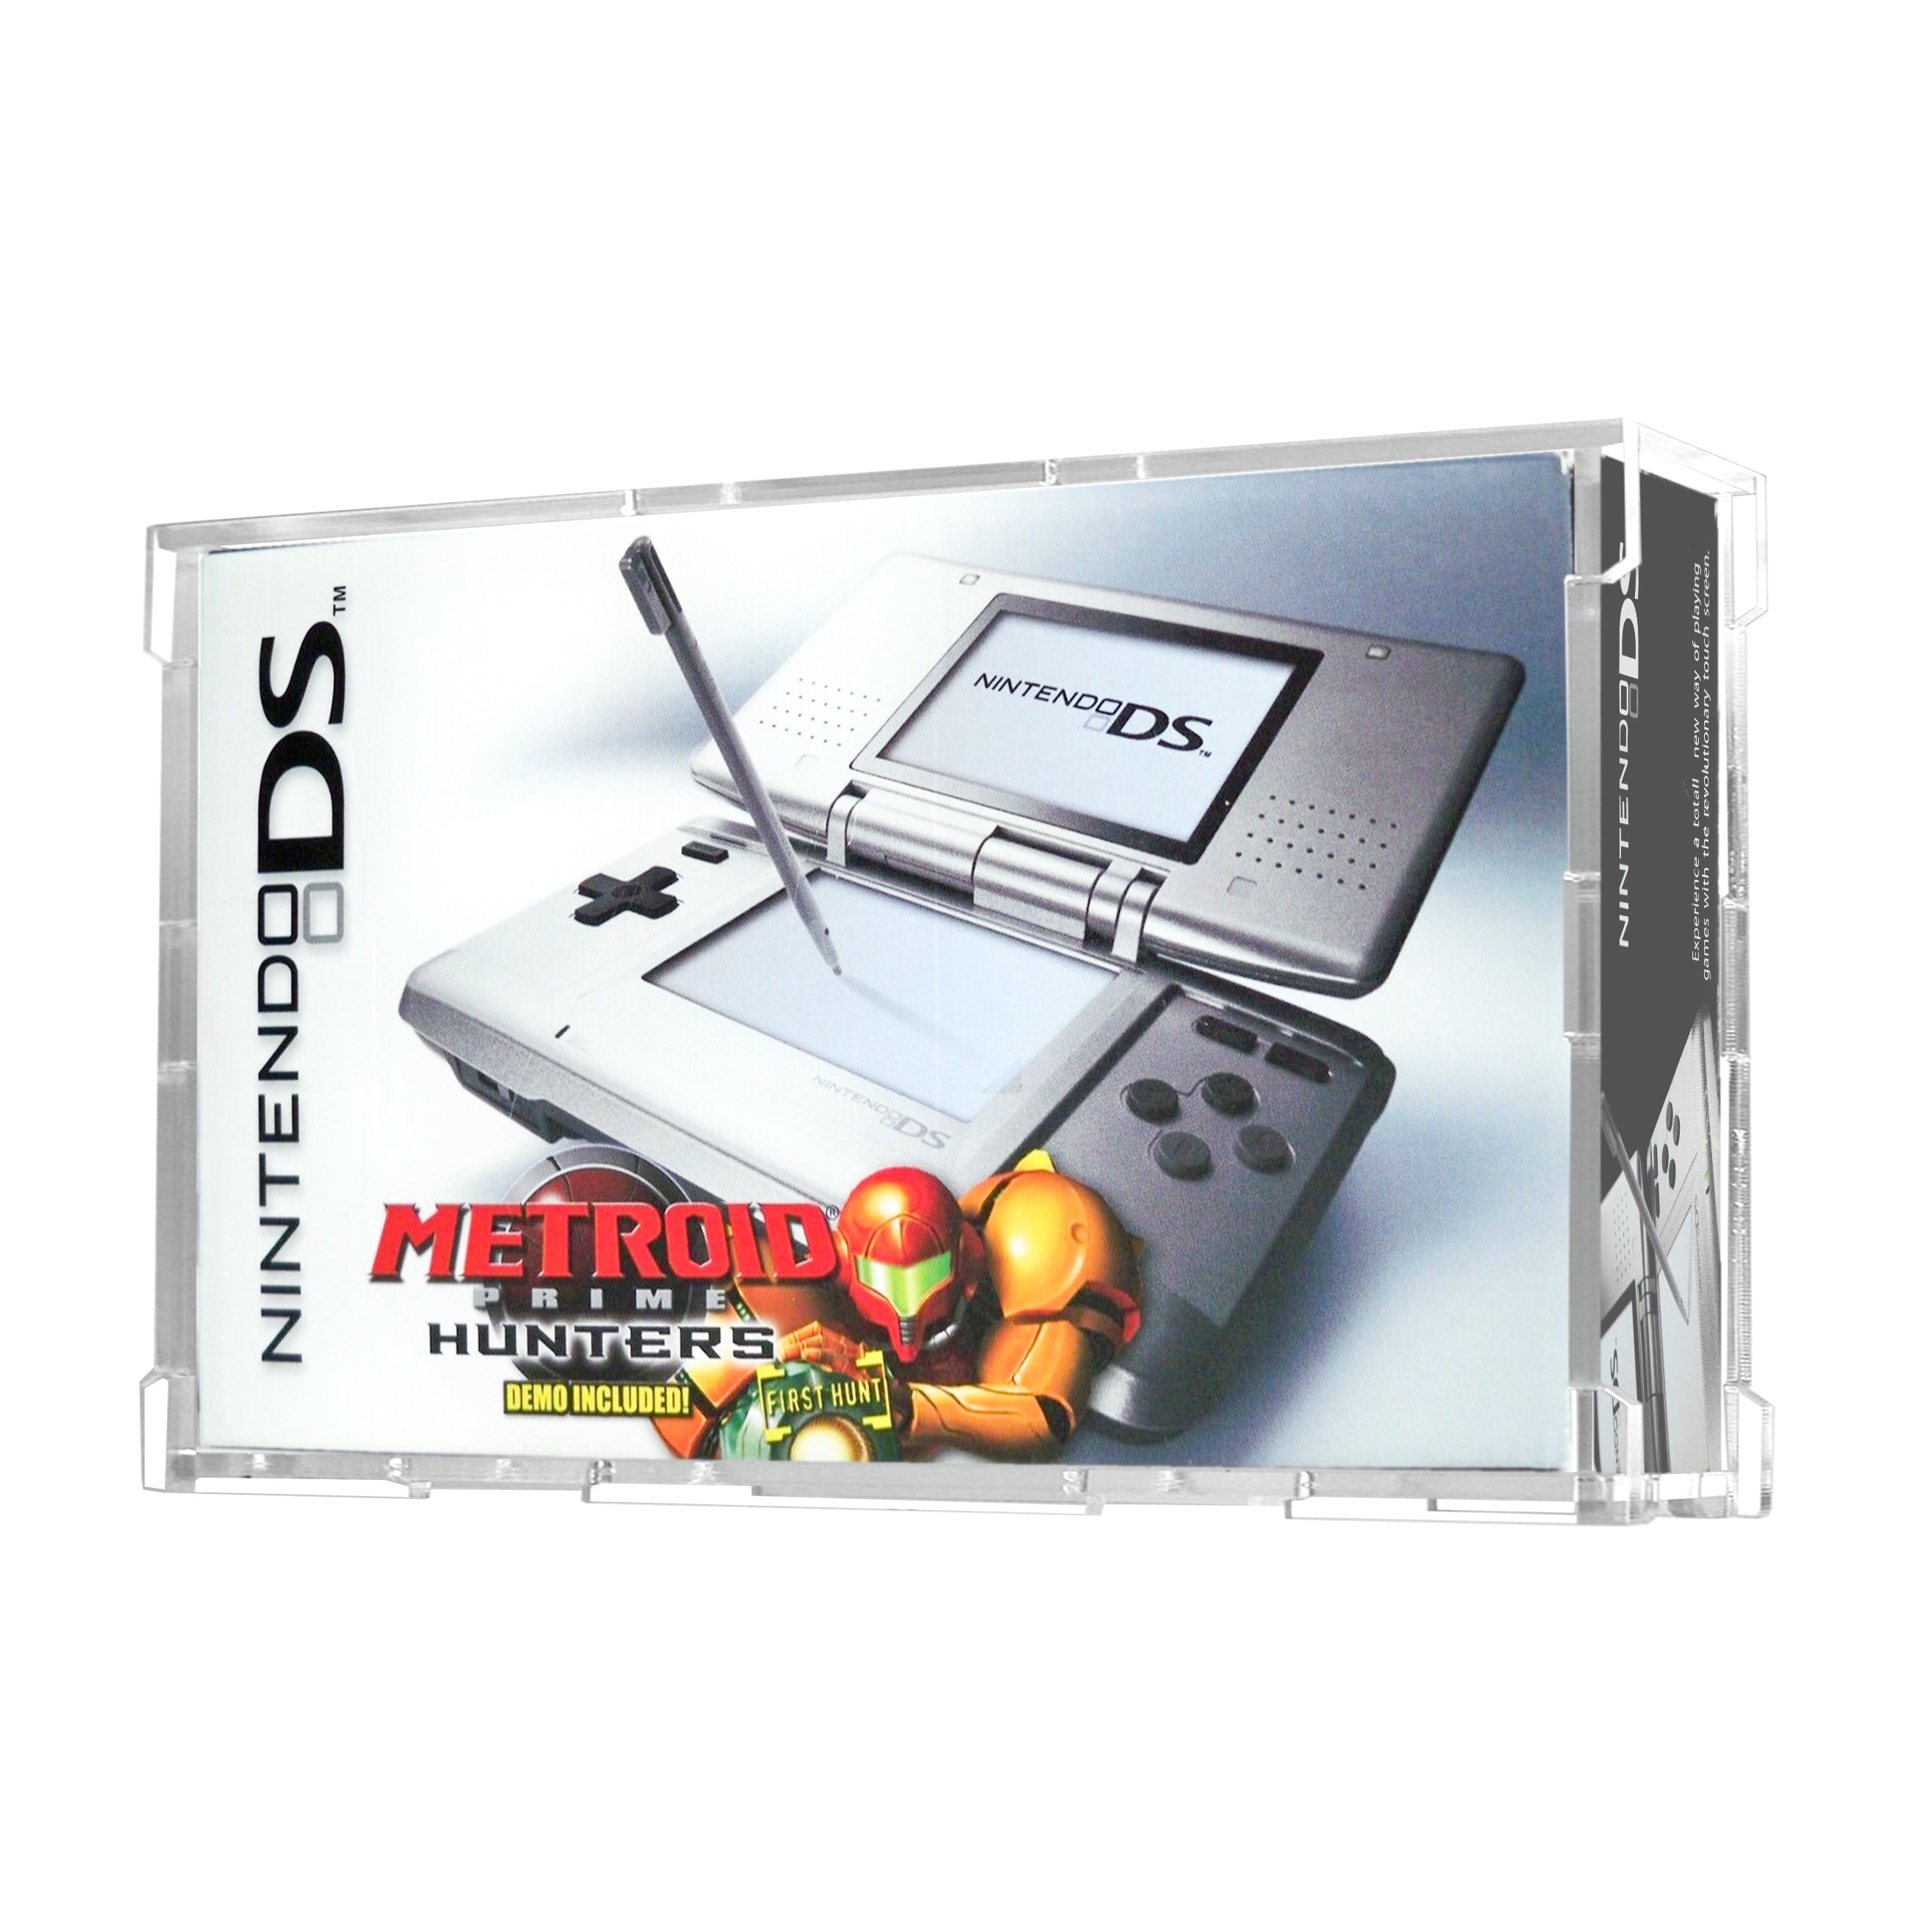 Protector para Nintendo DS™ (Fat)-acrilico-exhibidor-caja-case-Decolecto